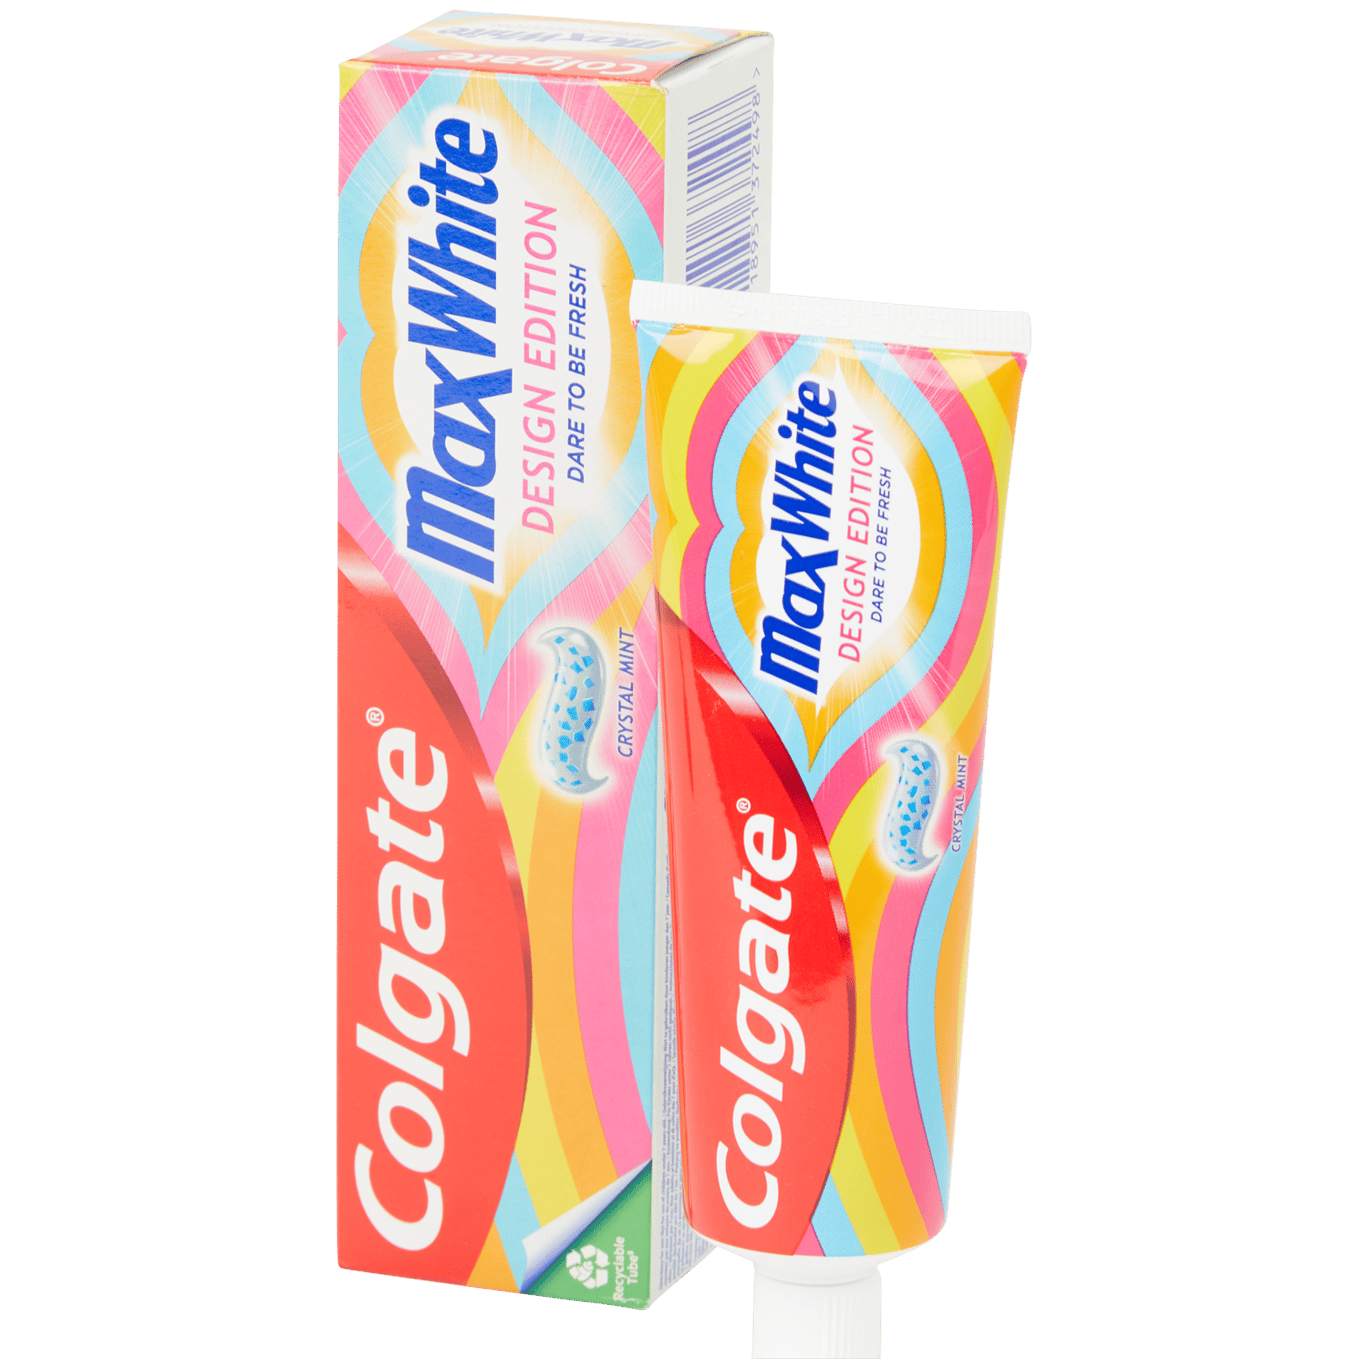 Colgate tandpasta Max White Limited Edition